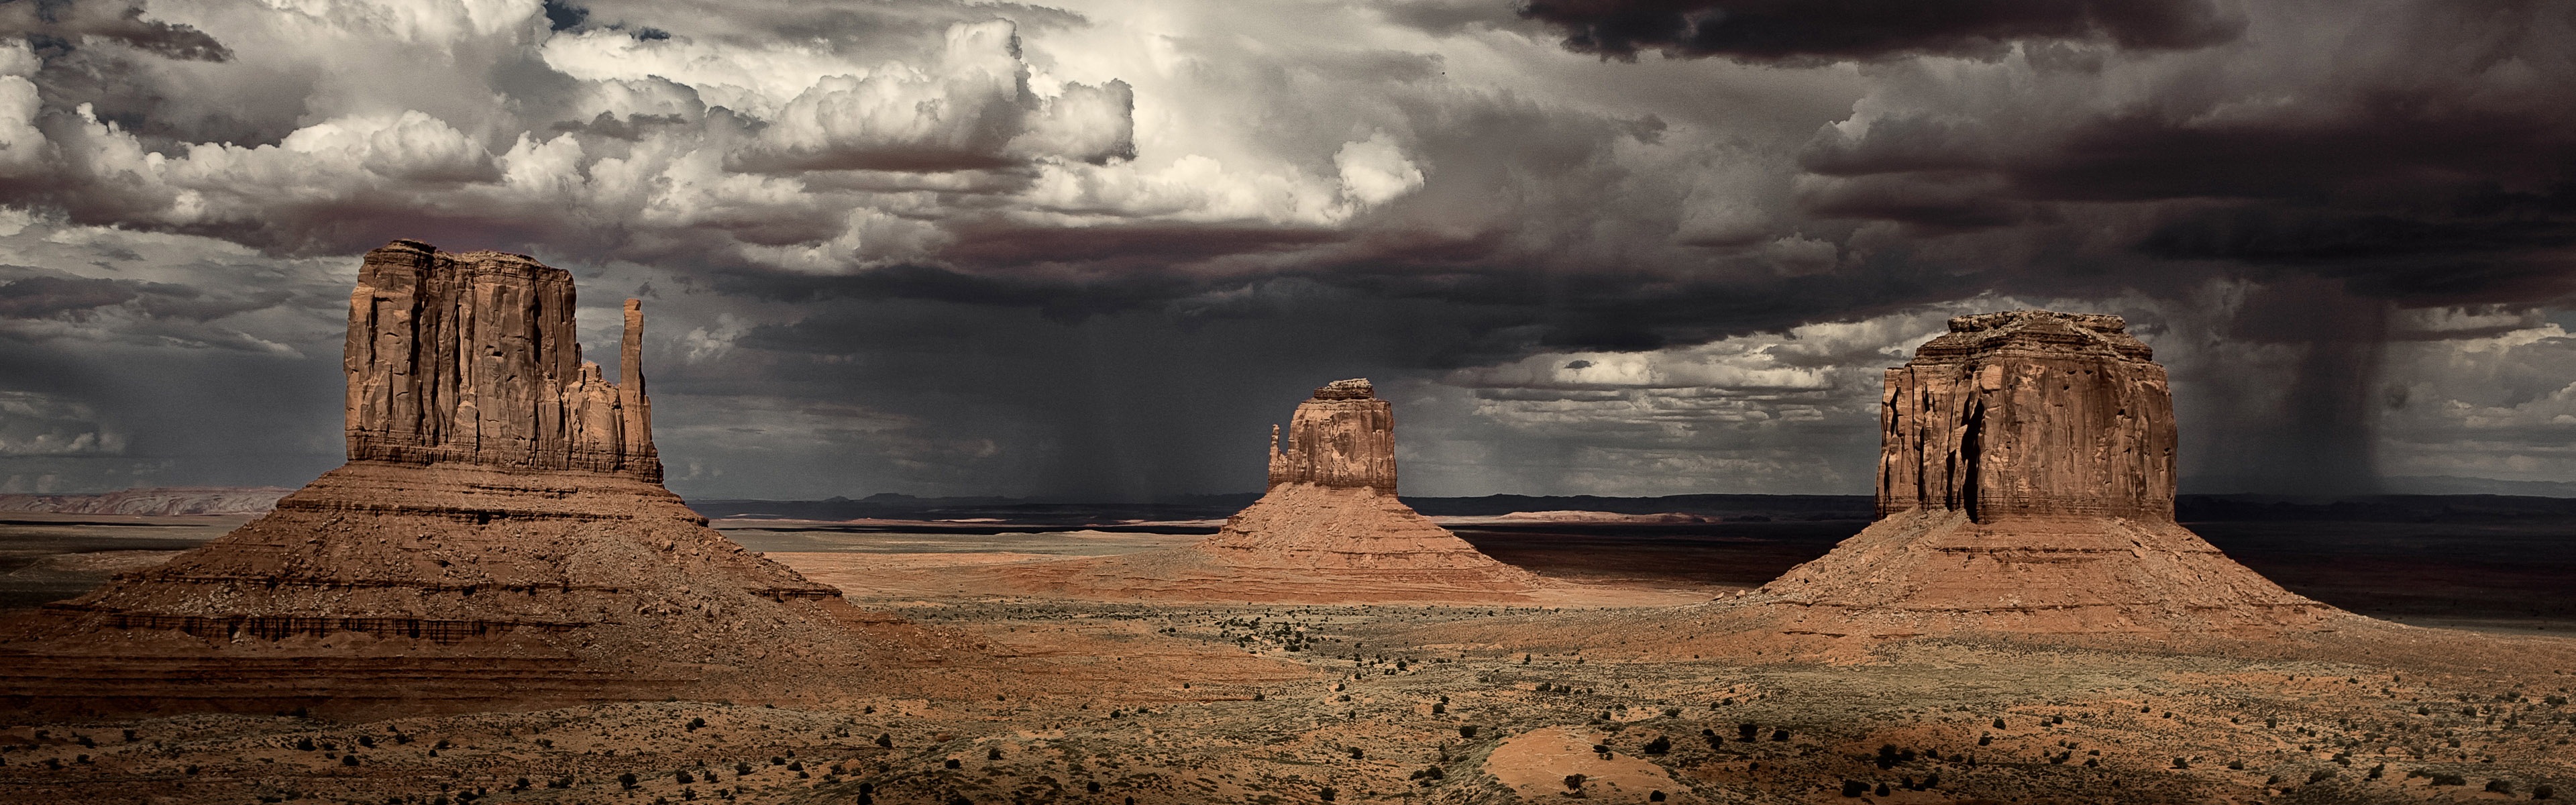 Горячие и засушливые пустыни, Windows 8 панорамные картинки на рабочий стол #7 - 3840x1200